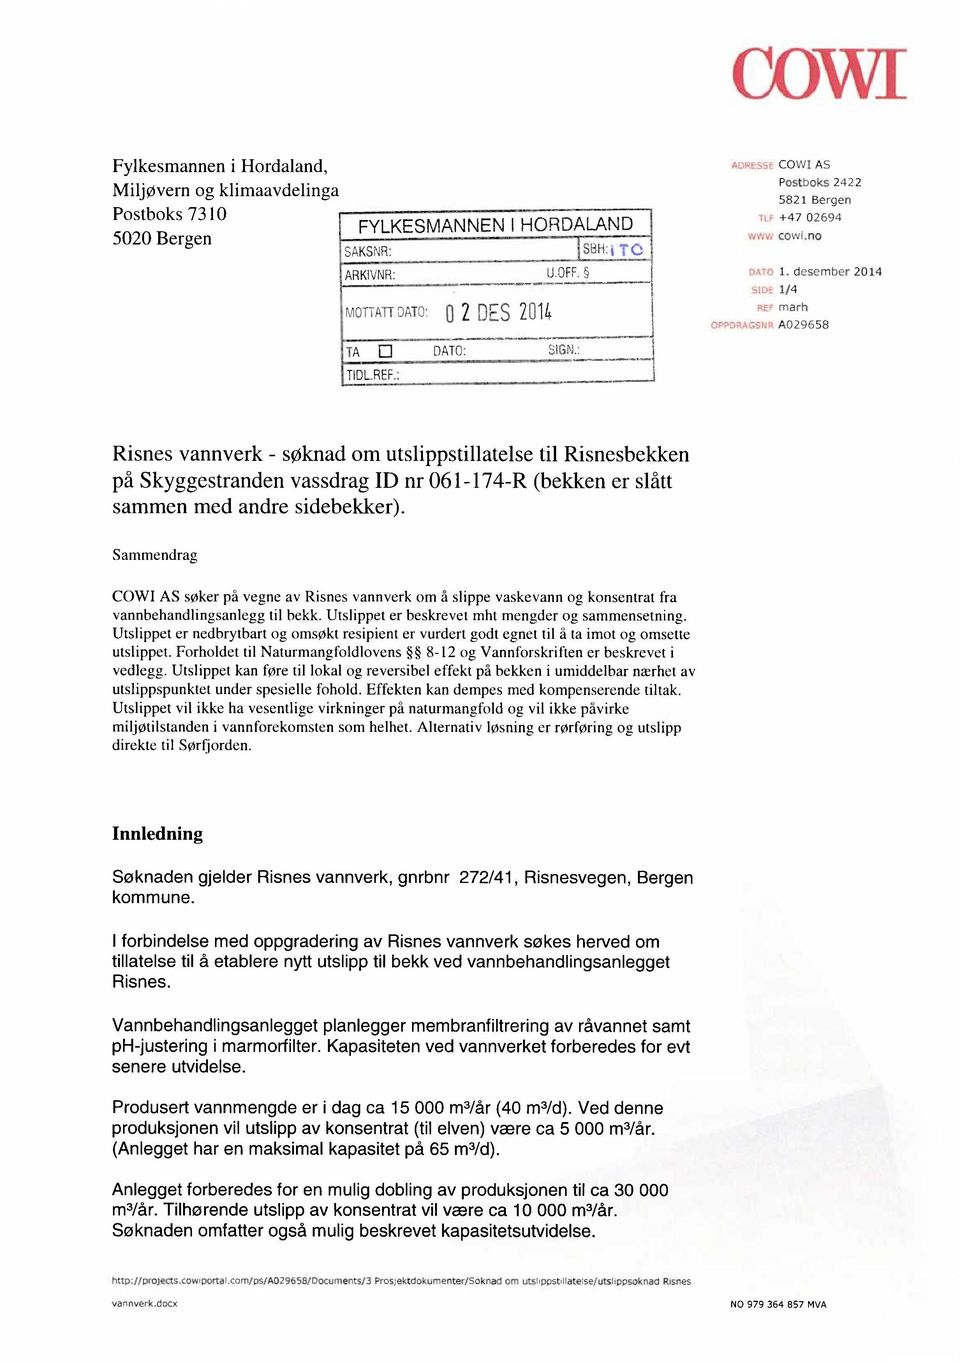 desember 2014 1/4 marh A029658 Risnes vannverk - søknad om utslippstillatelse til Risnesbekken på Skyggestranden vassdrag ID nr 061-174-R (bekken er slått sammen med andre sidebekker).